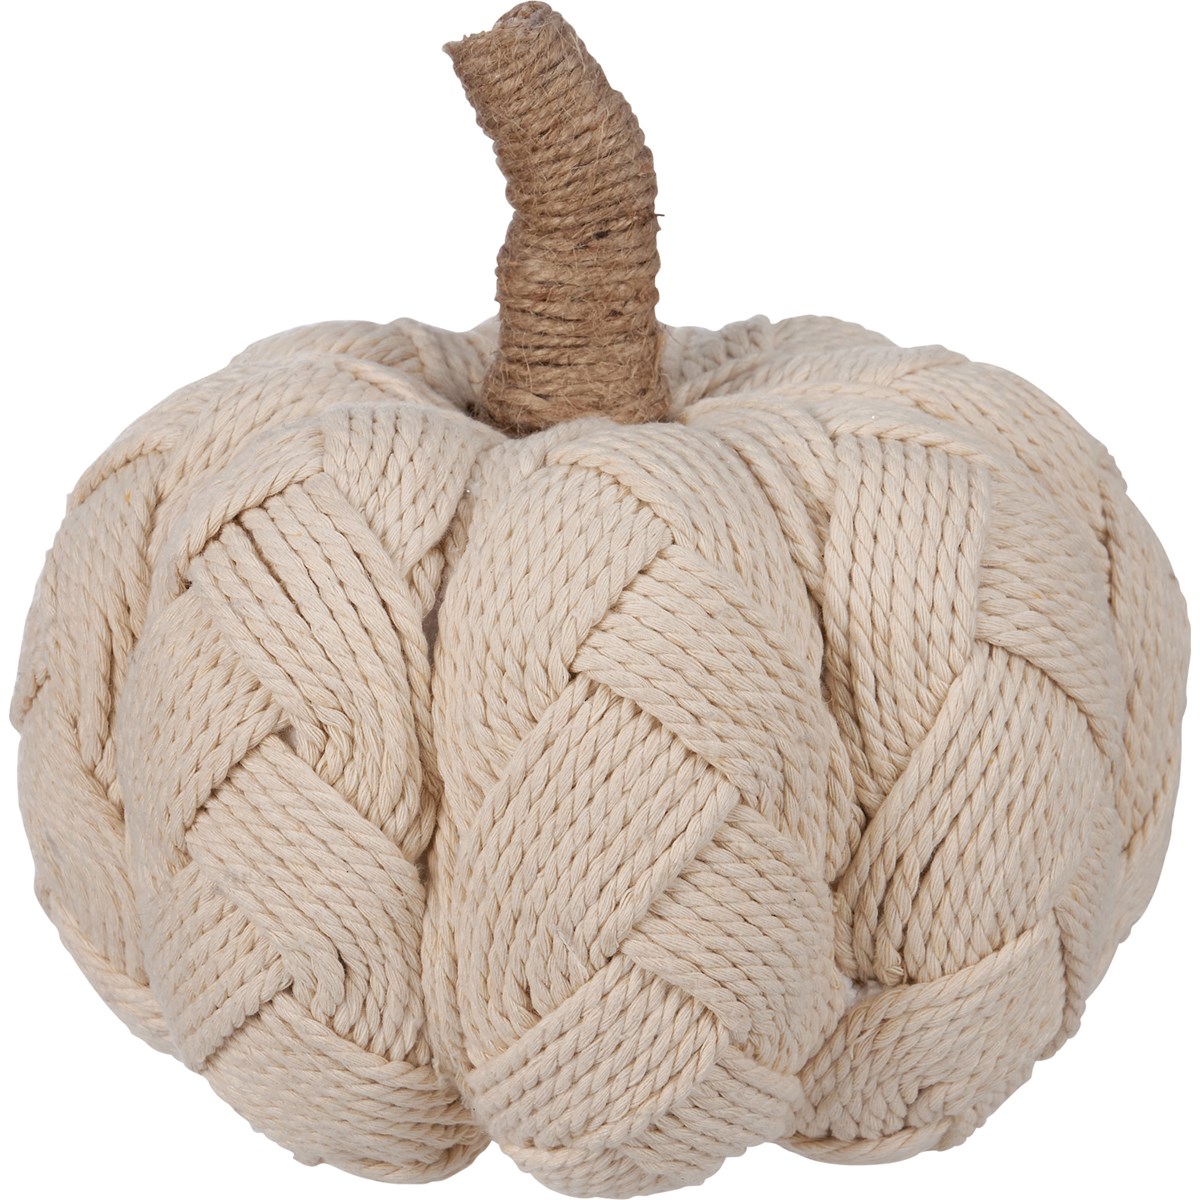 Cream Woven Pumpkin - Foam, Cotton, Jute